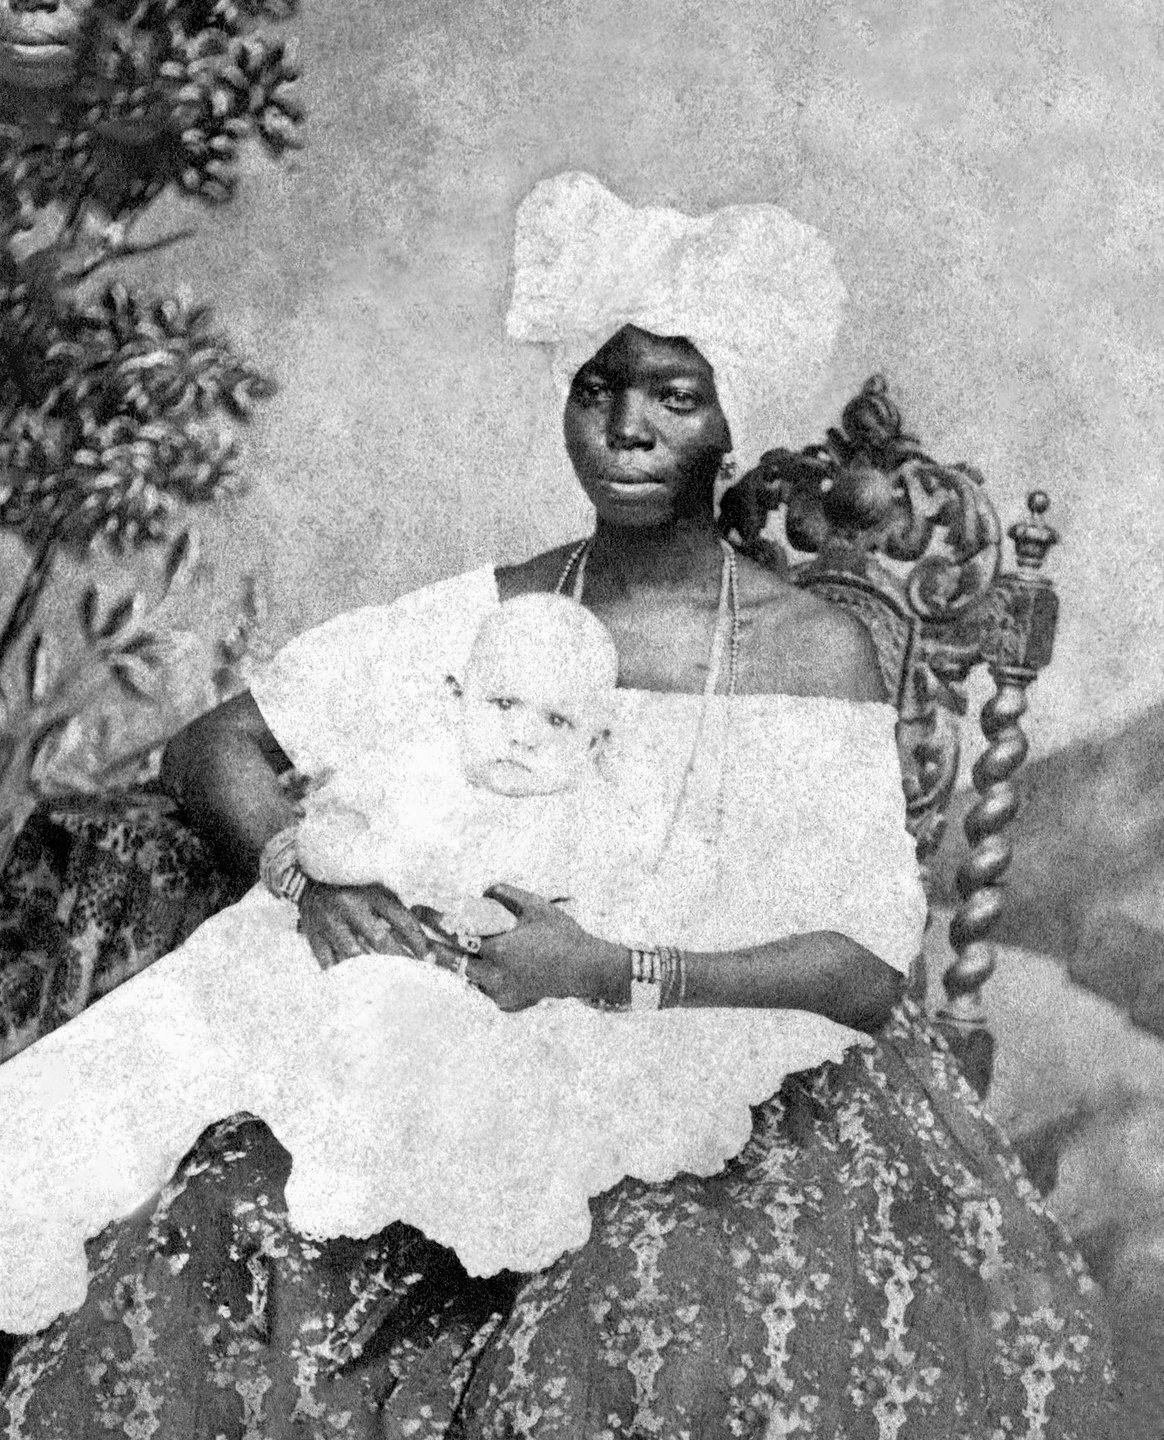 A nanny with child,1870 Salvador de Bahia